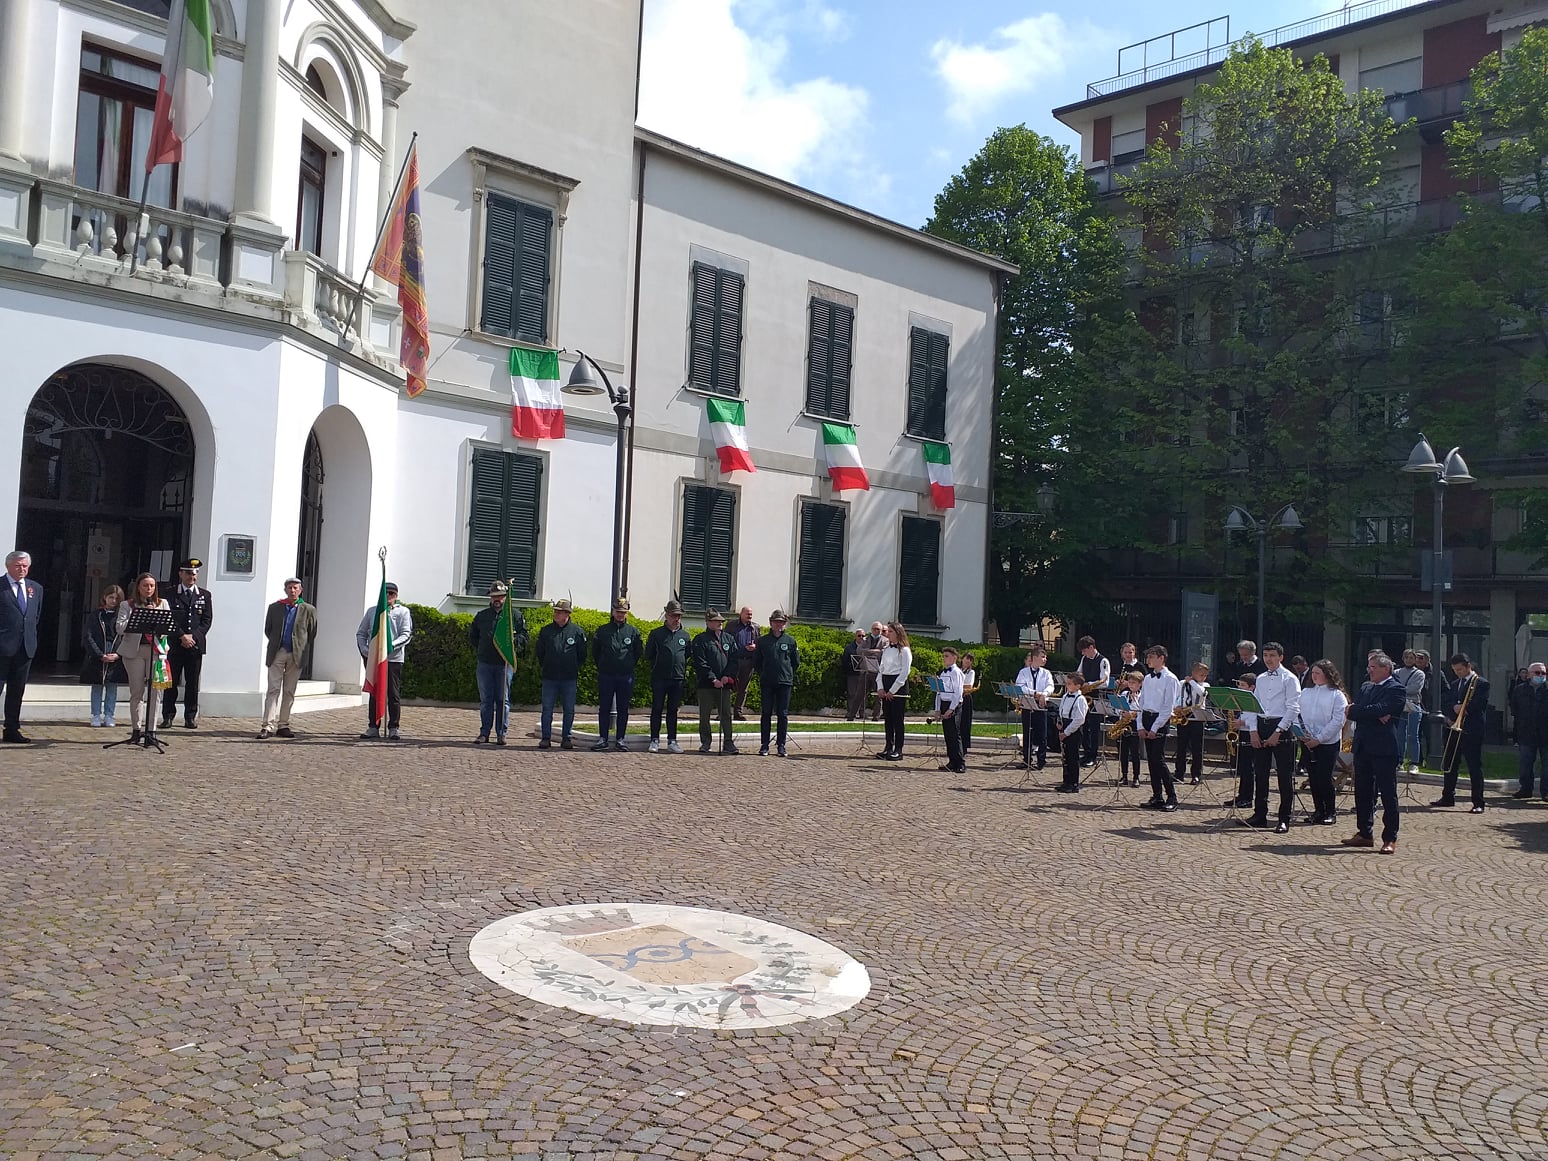 Культурное объединение „Гармония” приняло участие в Национальном празднике Италии „День освобождения 25 апреля” с Оркестром фанфар молдавских и румынских детей „Гармония” из города Спинеа Венеция.